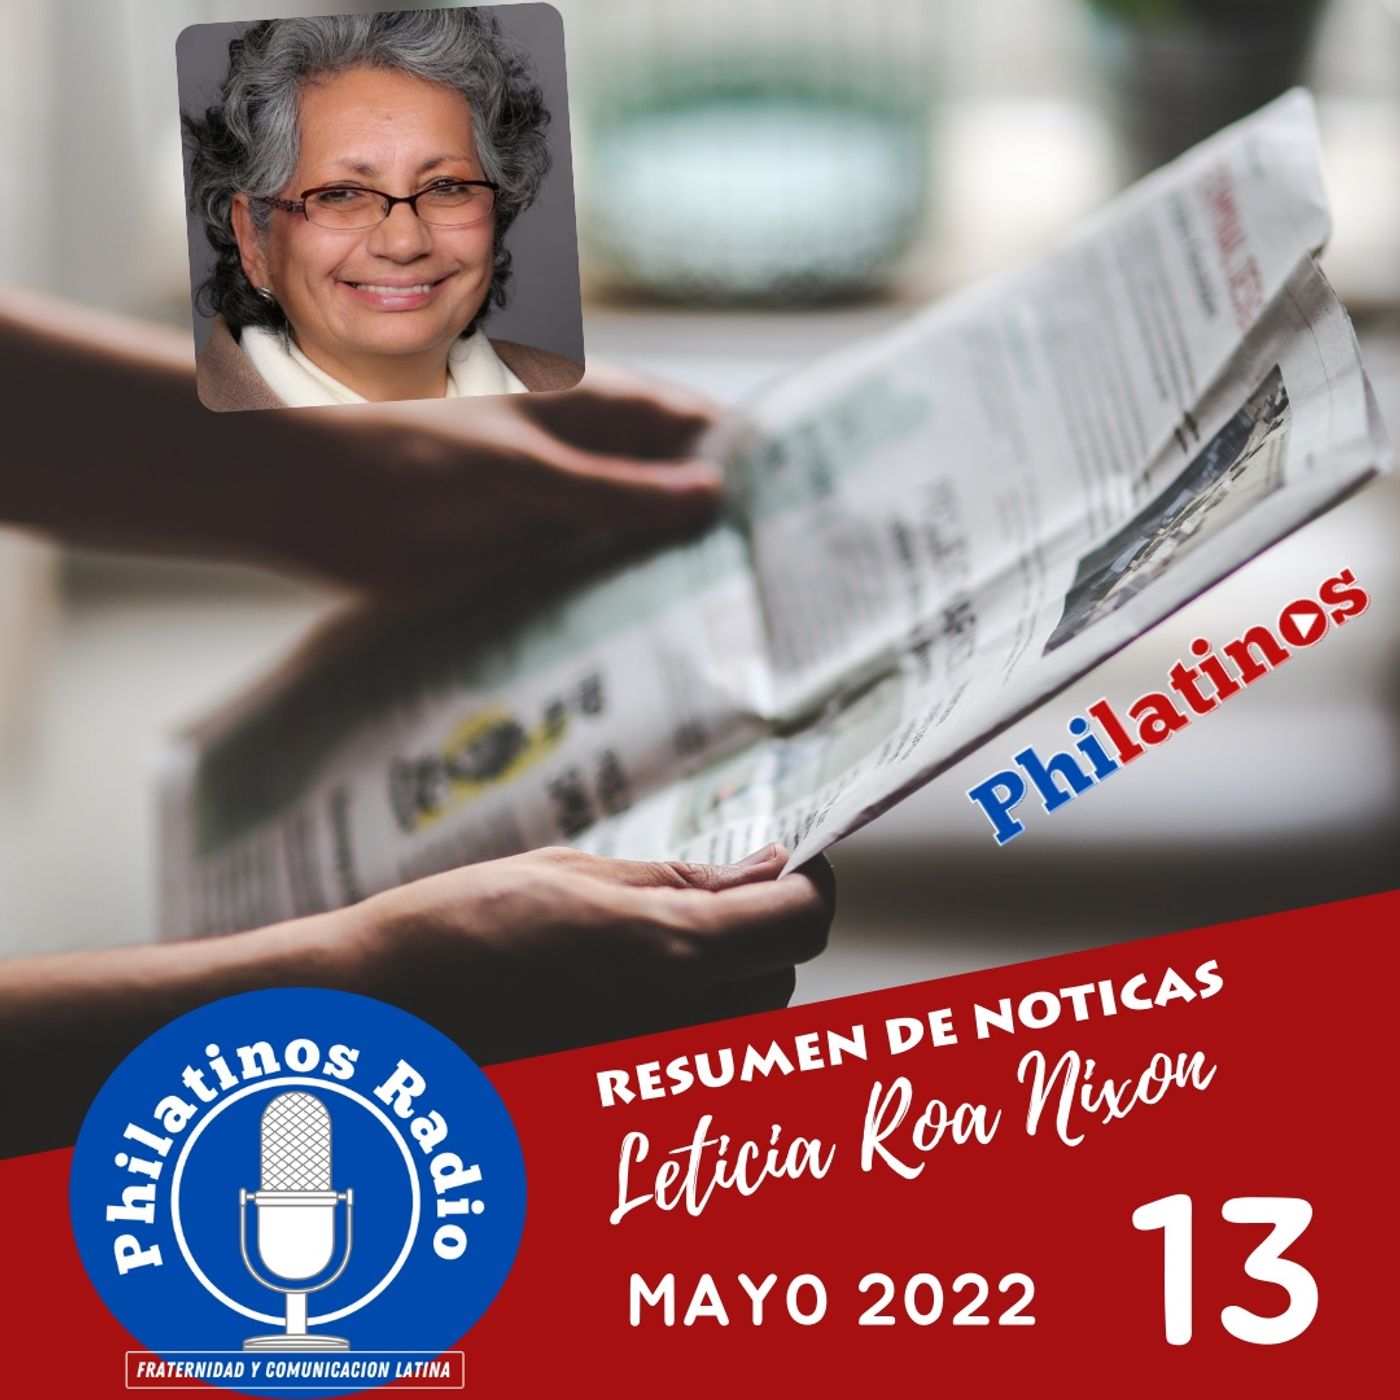 Resumen de Noticias Mayo 13,  2022  | La Noticia con Leticia